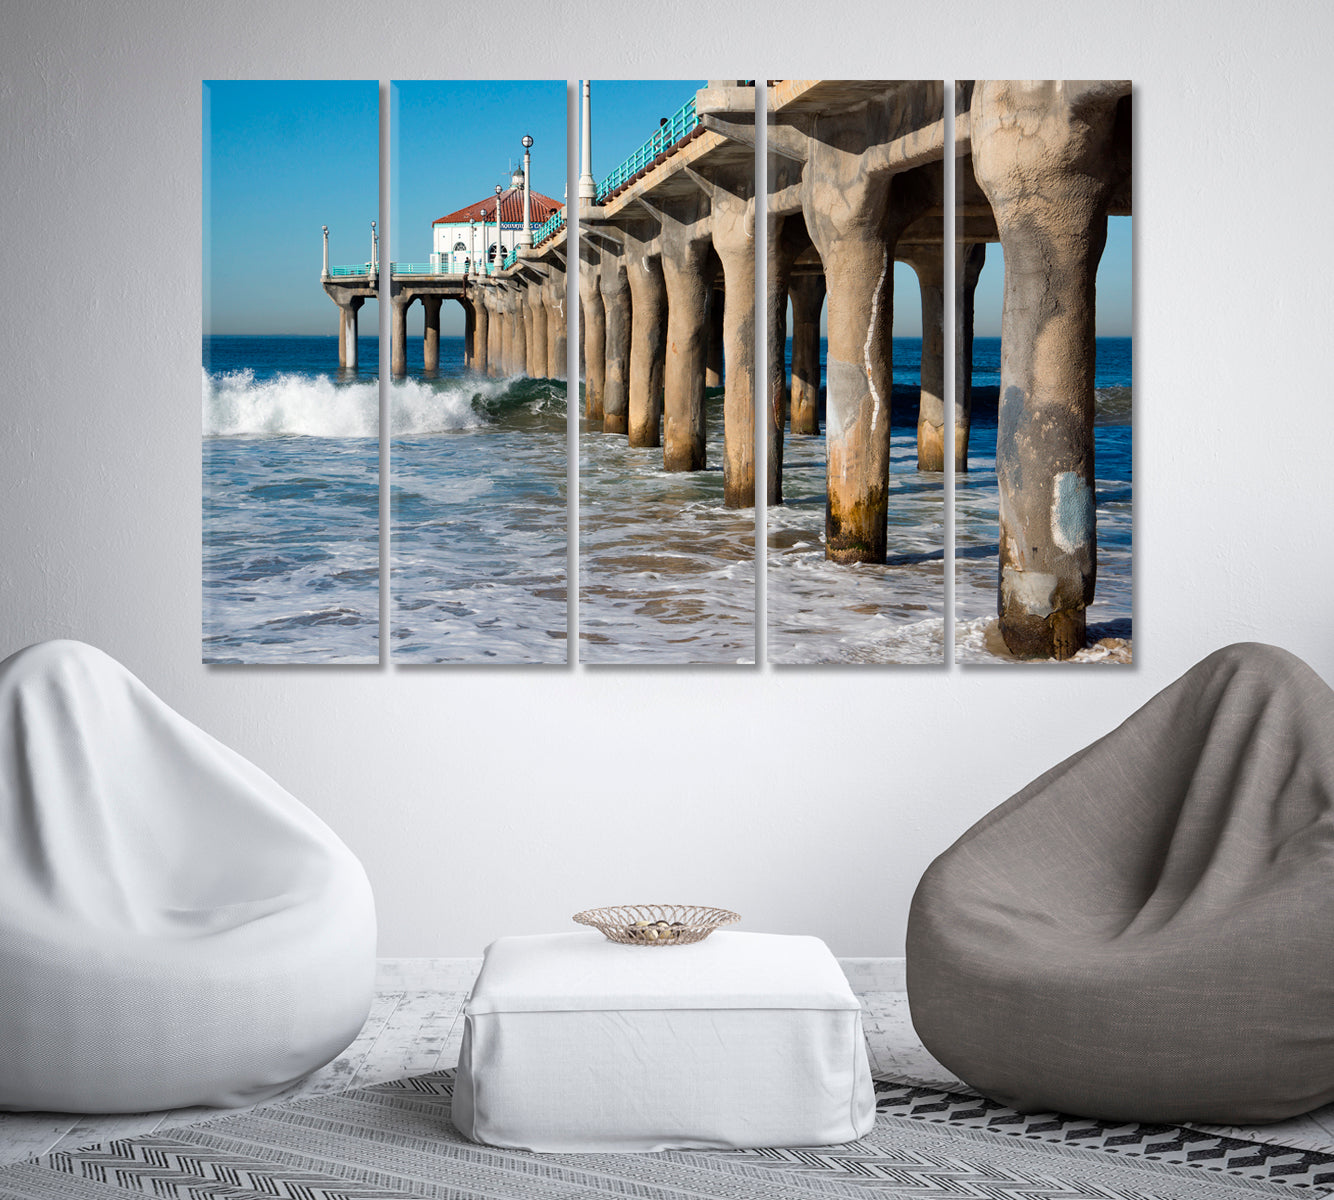 Along Manhattan Beach Pier California Canvas Print-Canvas Print-CetArt-1 Panel-24x16 inches-CetArt